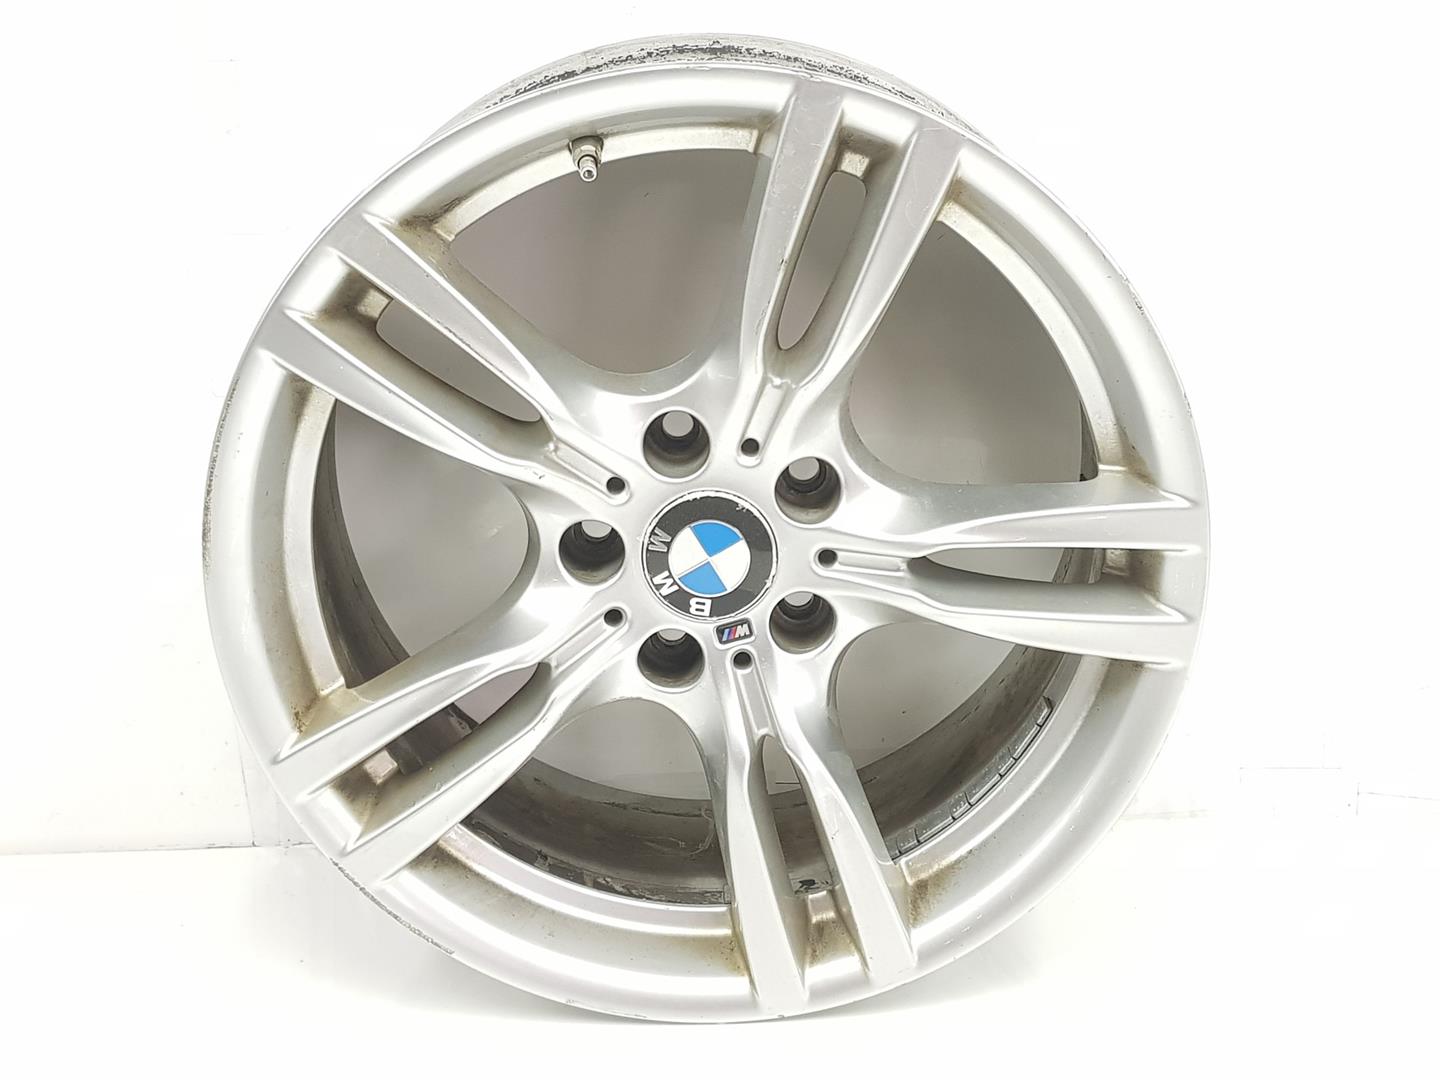 BMW 4 Series F32/F33/F36 (2013-2020) Wheel 7845880, 8JX18, 18PULGADAS 23800160